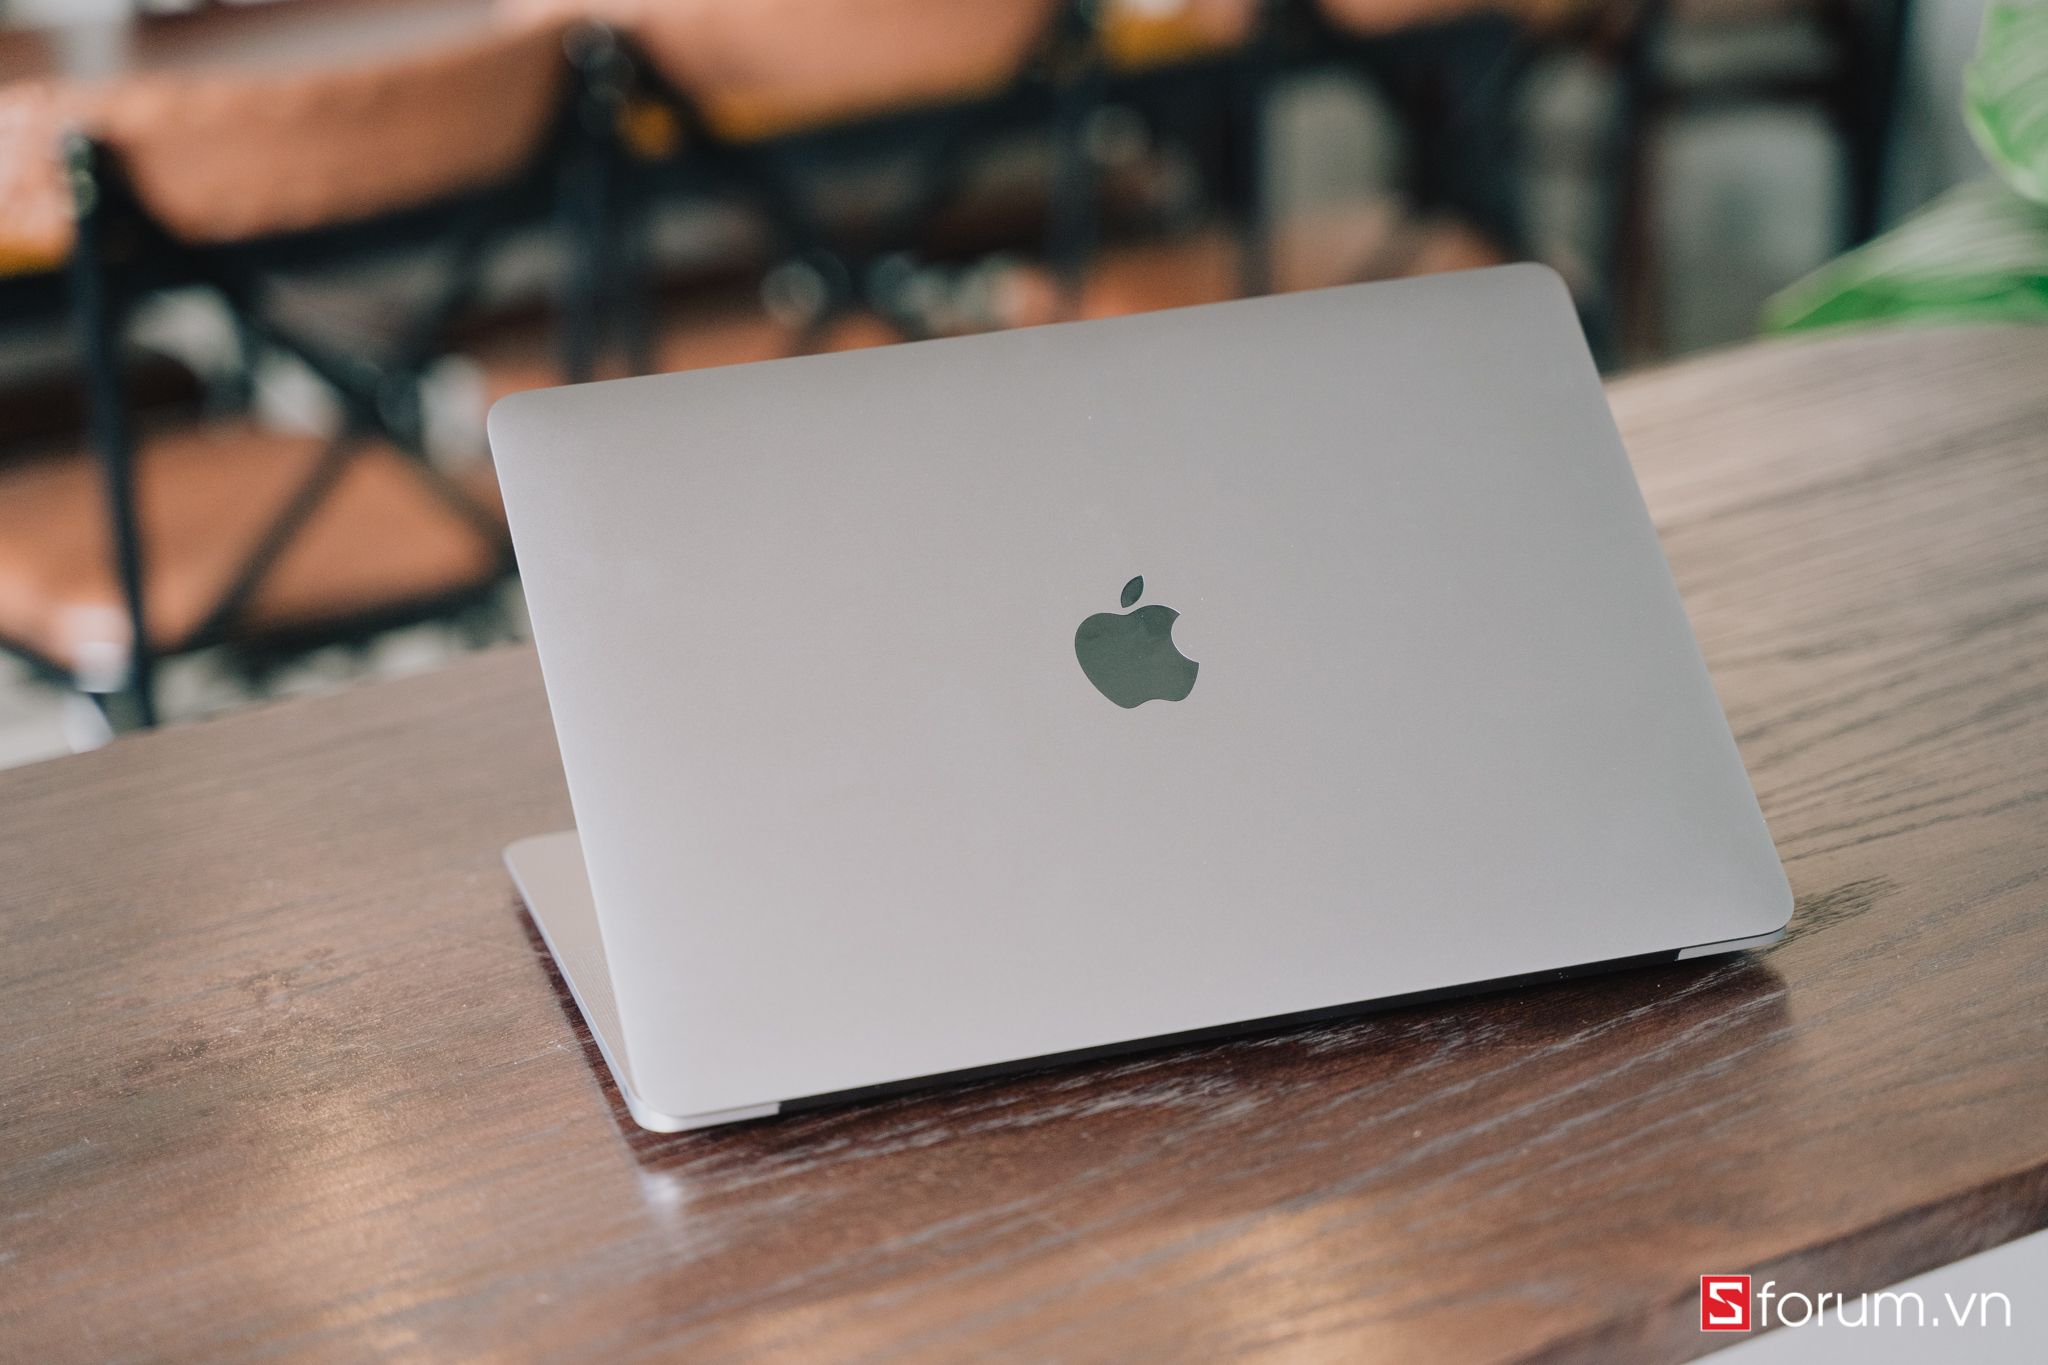 Với thiết kế mỏng nhẹ và chất liệu nhôm bền bỉ, MacBook Air M1 256GB 2020 không chỉ đẹp mắt mà còn mang lại sự bền bỉ